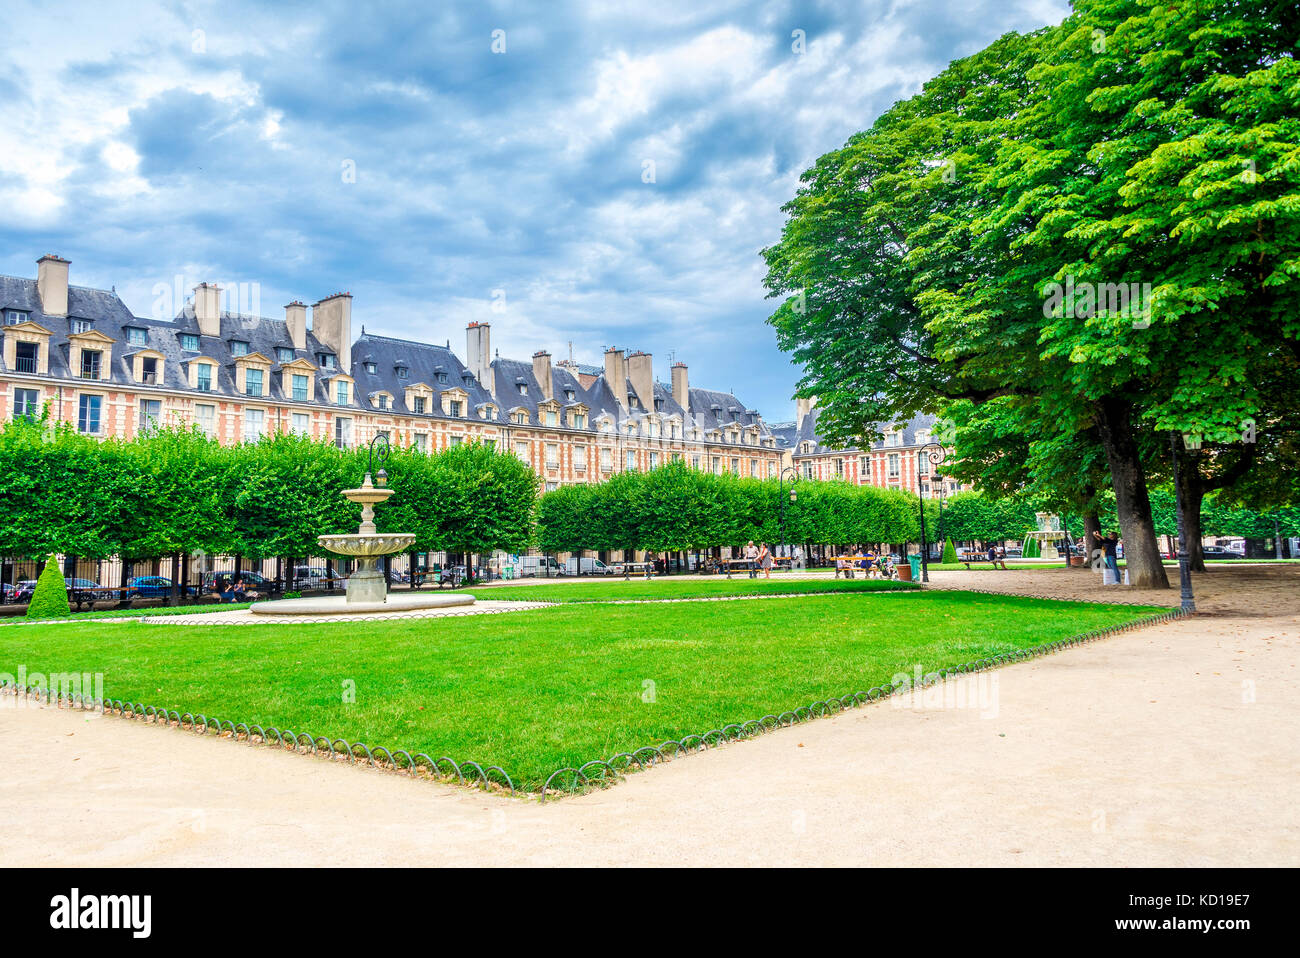 La Place des Voges, Originalmente Place Royale, es la plaza planificada más antigua de París, Francia. Situado en el barrio de Marais es popular entre los lugareños. Foto de stock